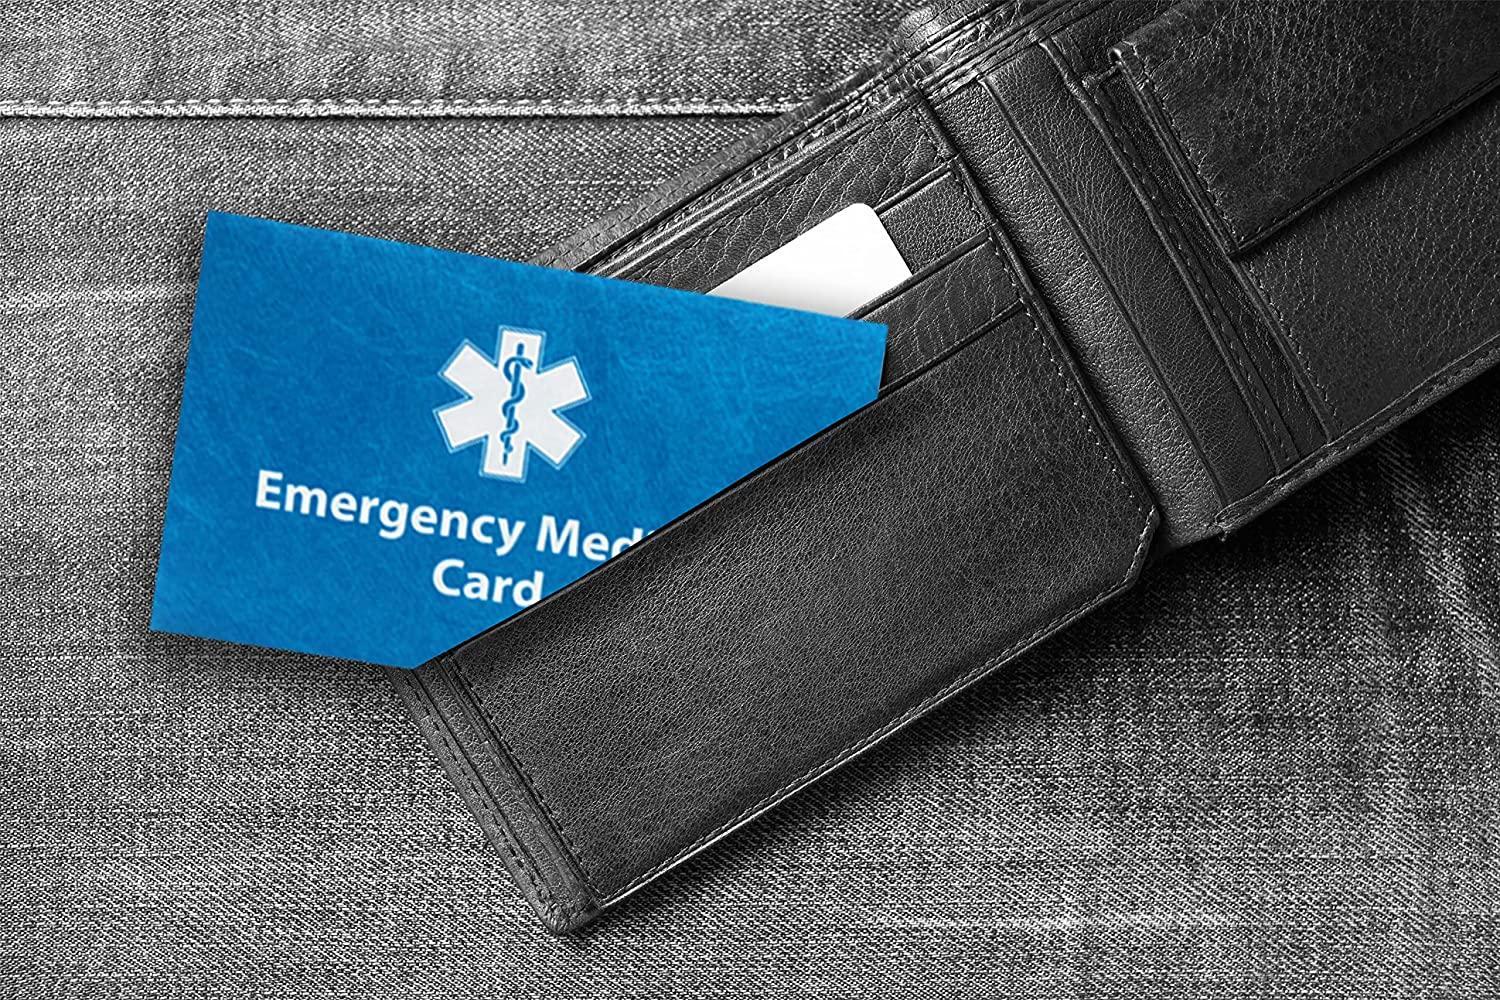 Medical Alert Bracelet for Men and Women. Emergency Medical Card